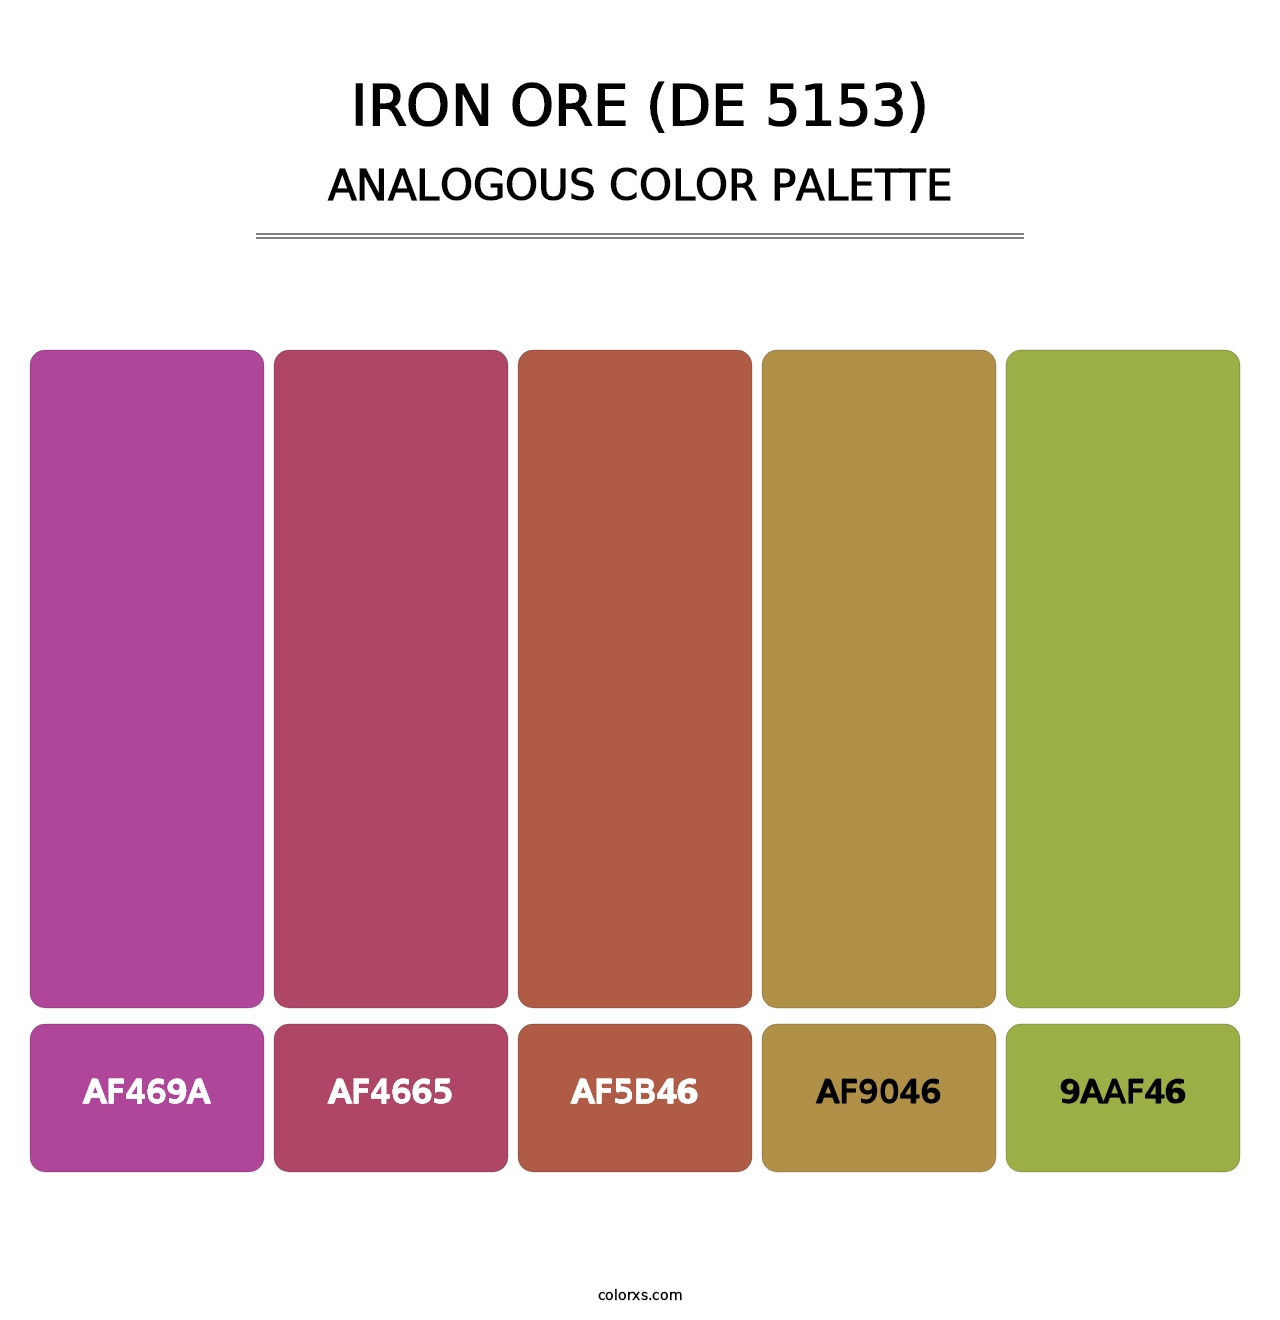 Iron Ore (DE 5153) - Analogous Color Palette